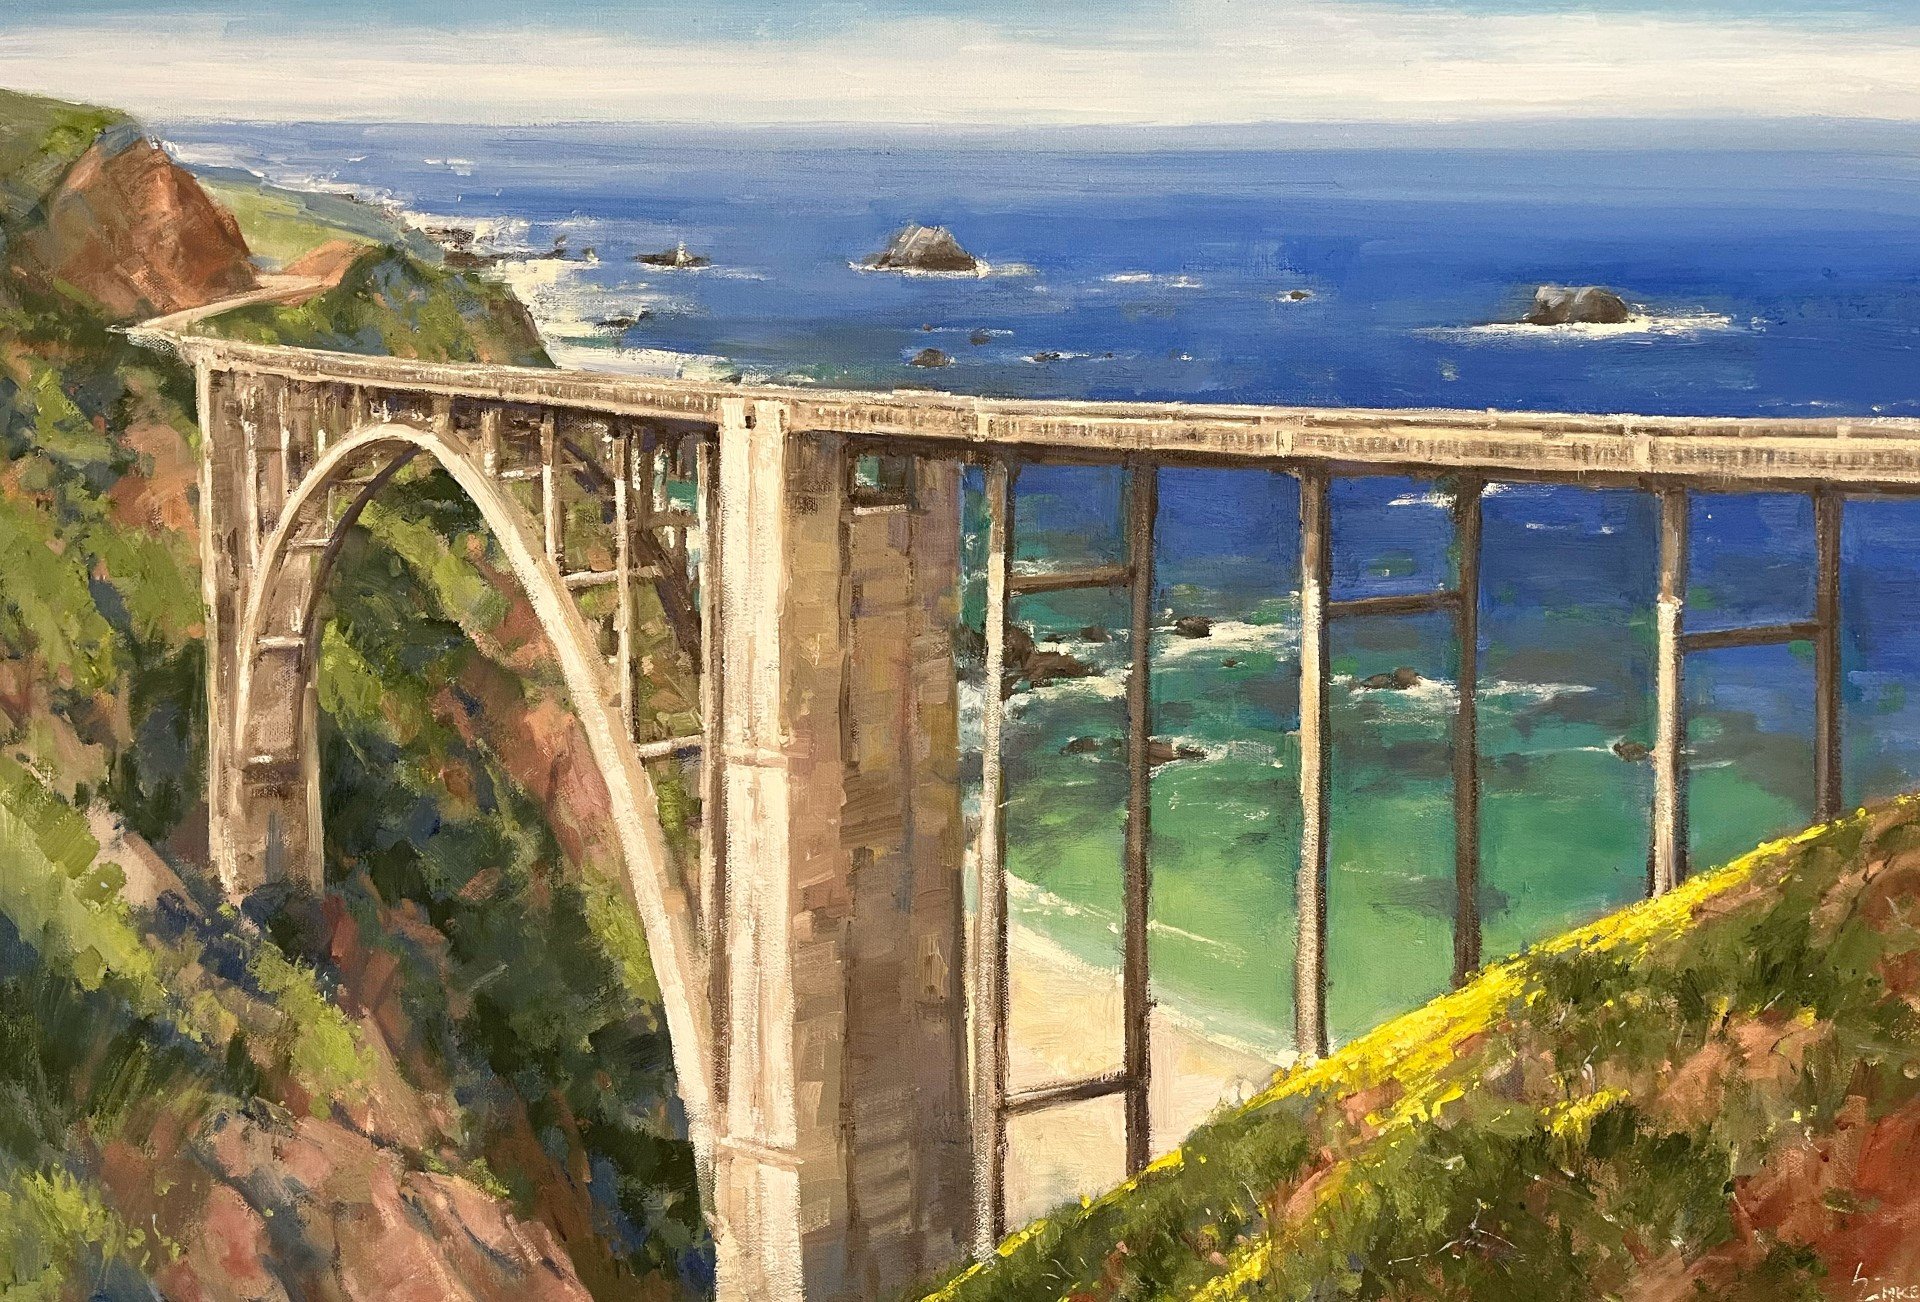  “Bixby Bridge Springtime” 24x36, $3600. 